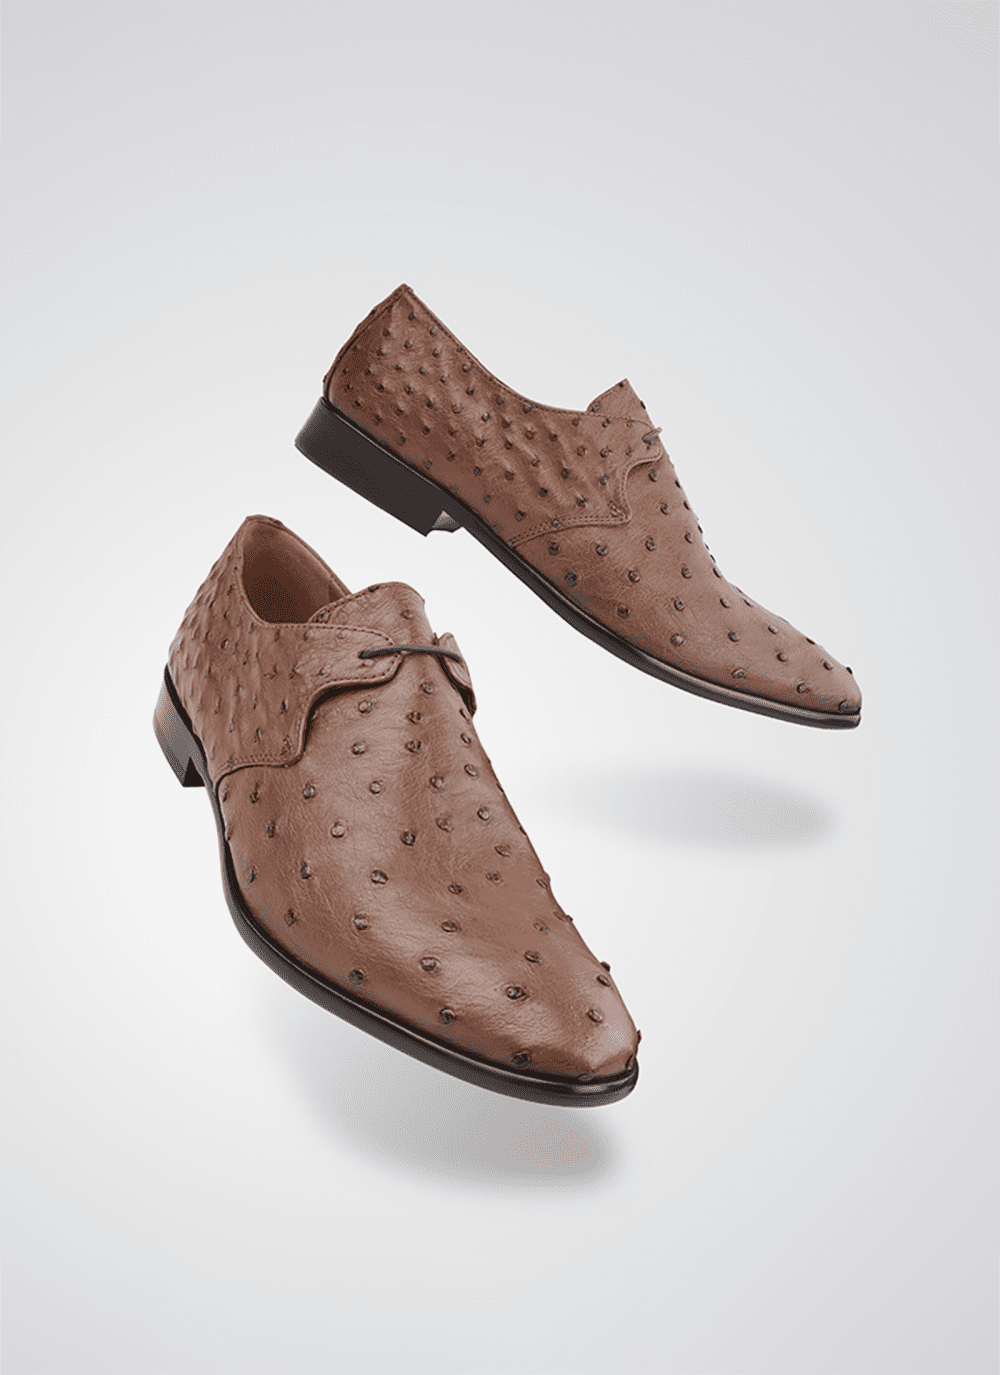 Language Shoes-Men-Apollo-Derby-Premium Leather-Brown Colour-Formal Shoe